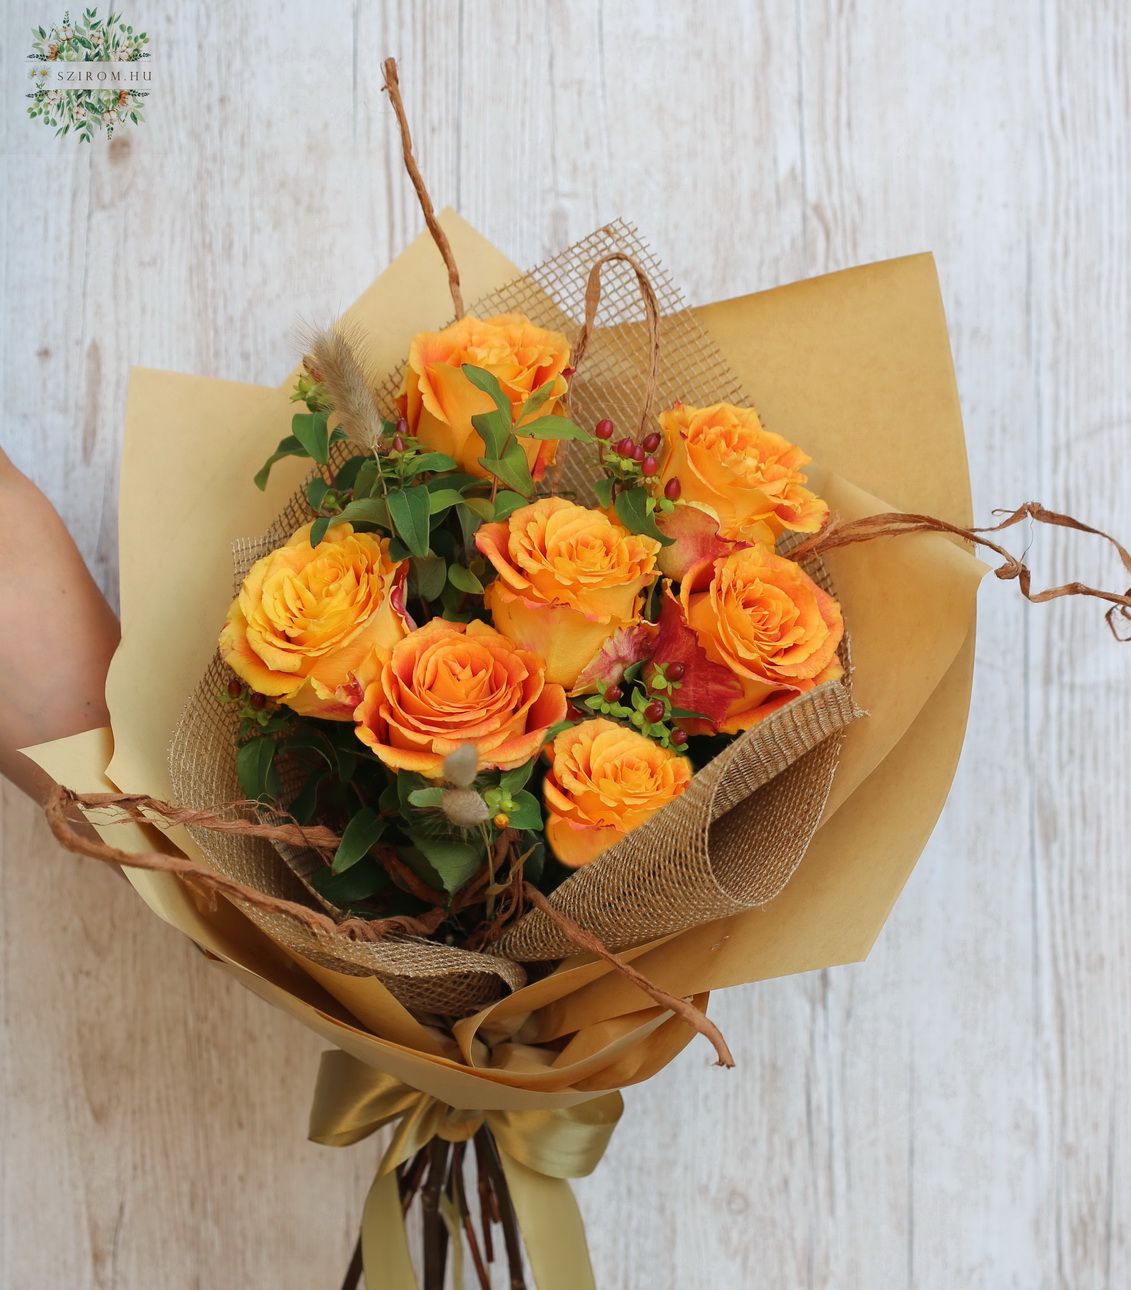 Blumenlieferung nach Budapest - 7 orangefarbene Rosen mit Hypericum-Beeren, mit rustikaler Dekoration